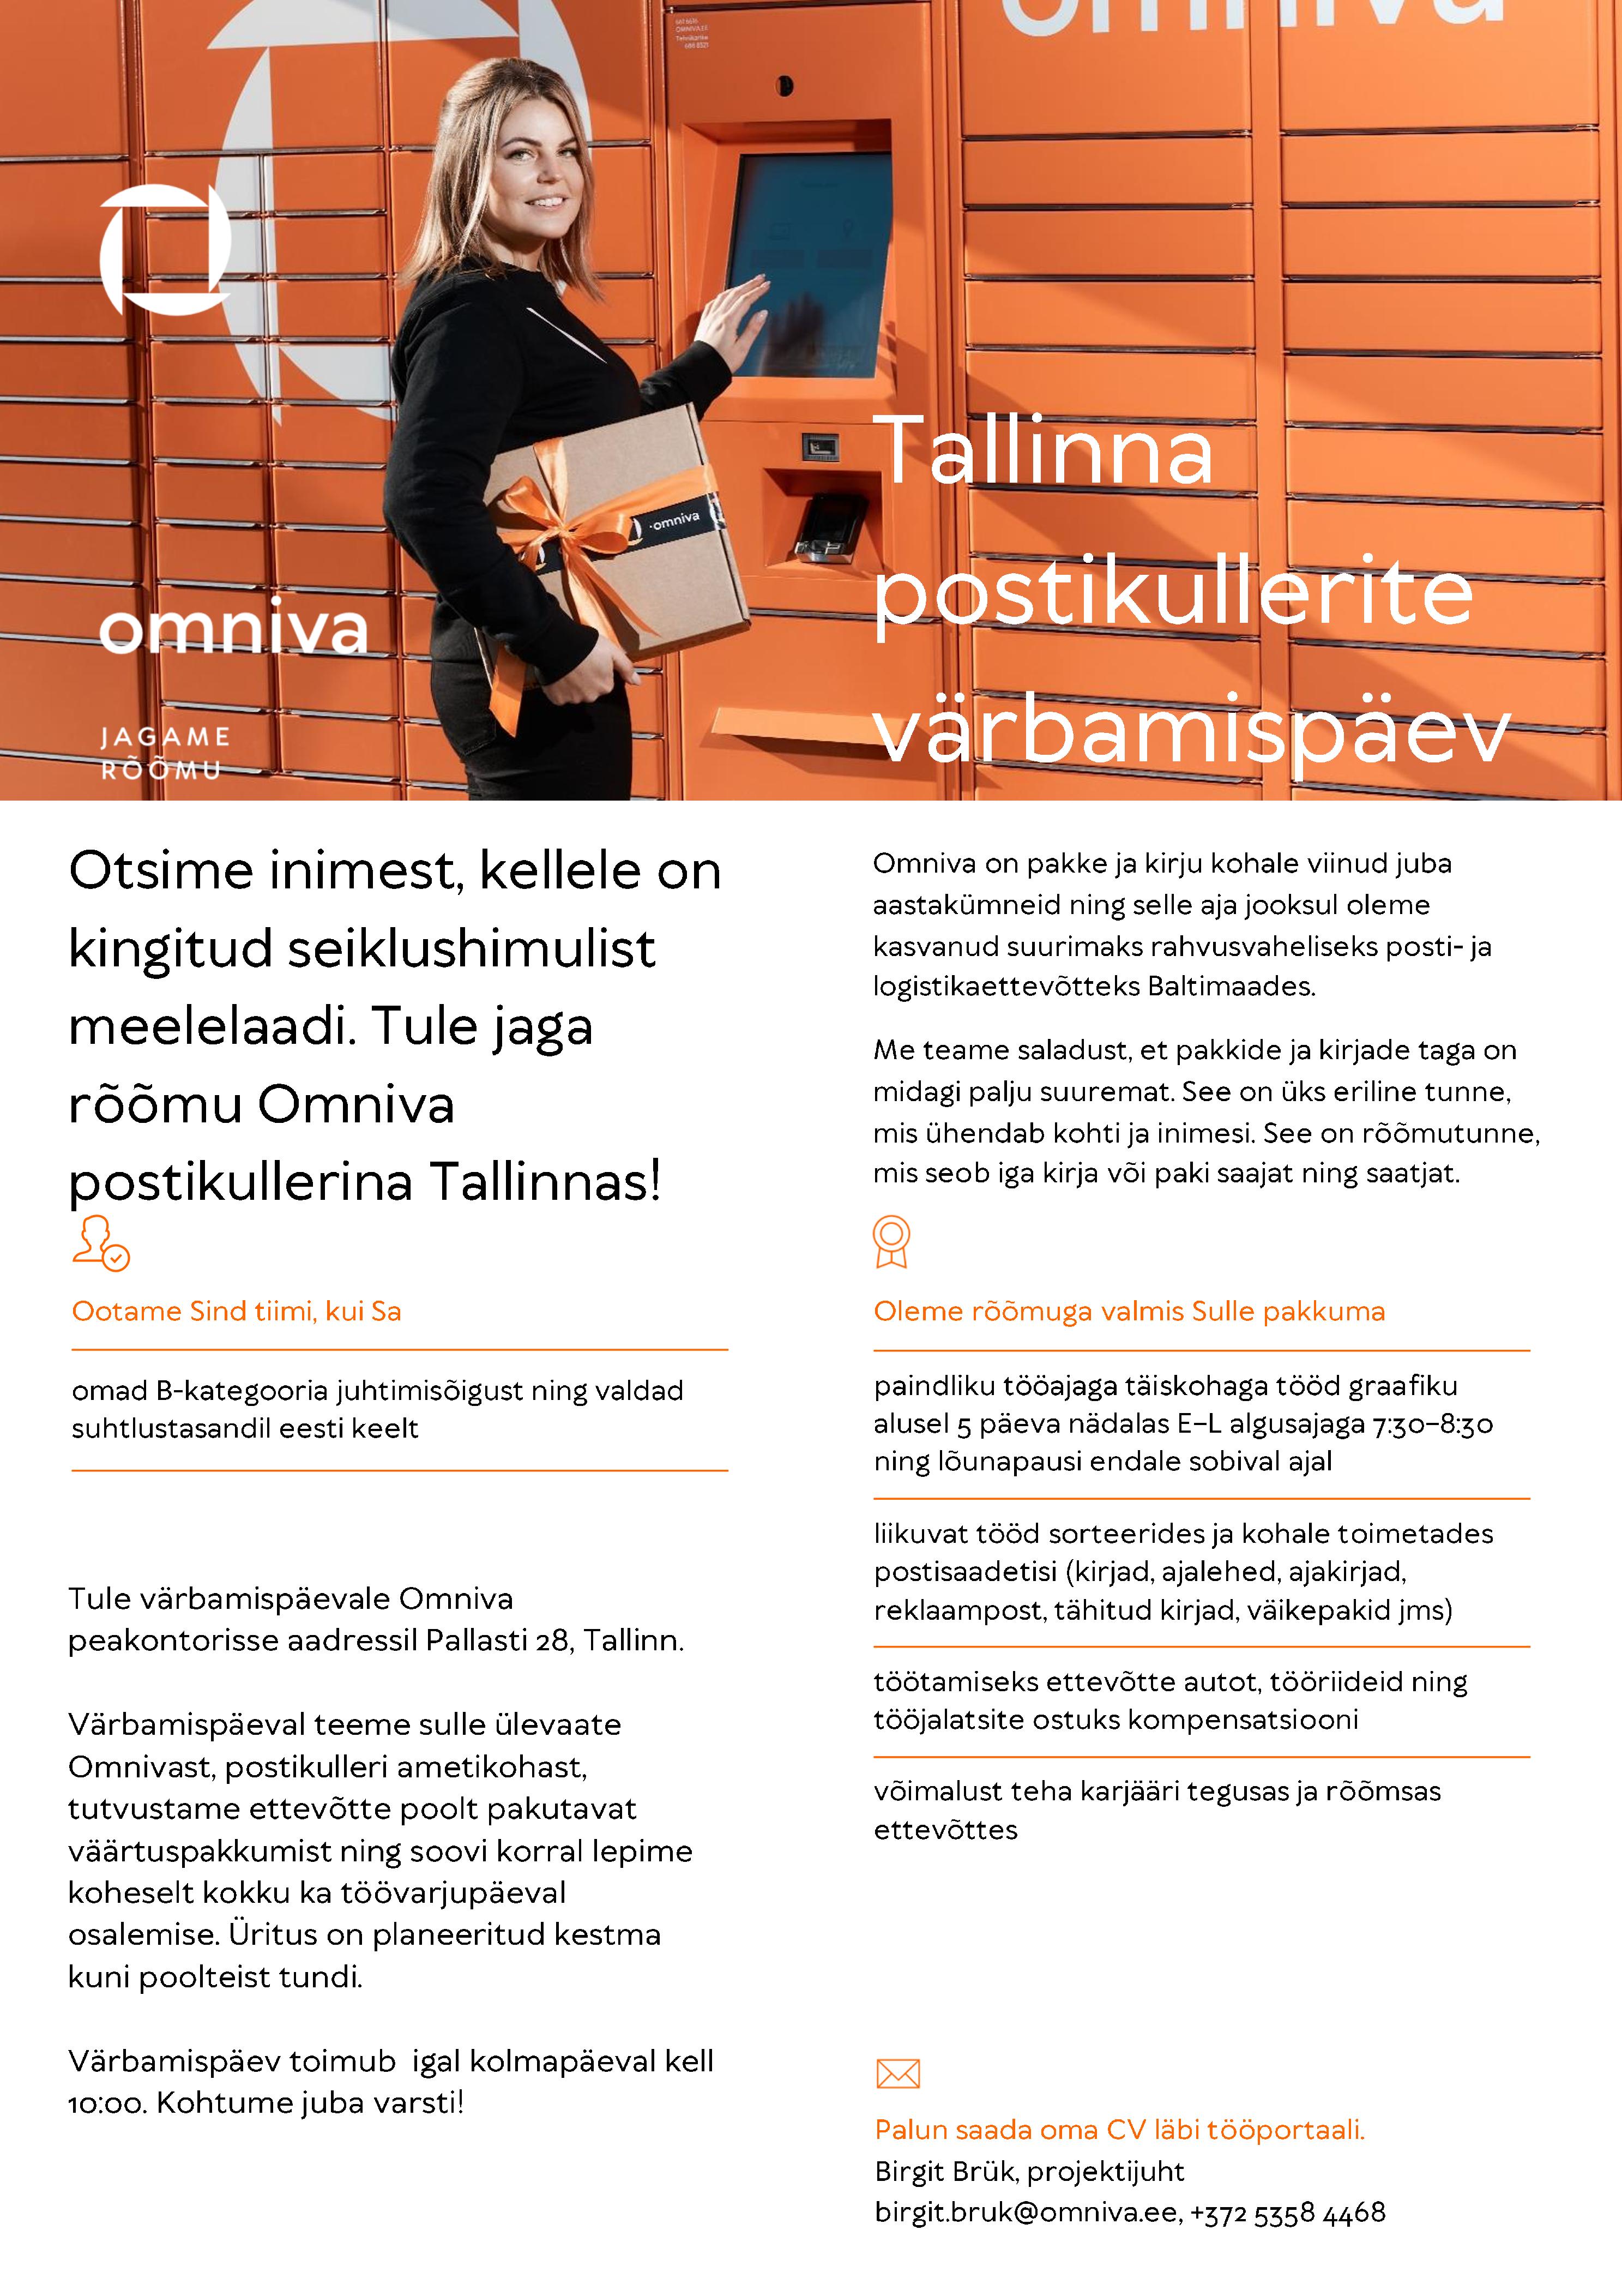 CVKeskus.ee klient Tallinna postikullerite värbamispäev iga kolmapäev kell 10:00.